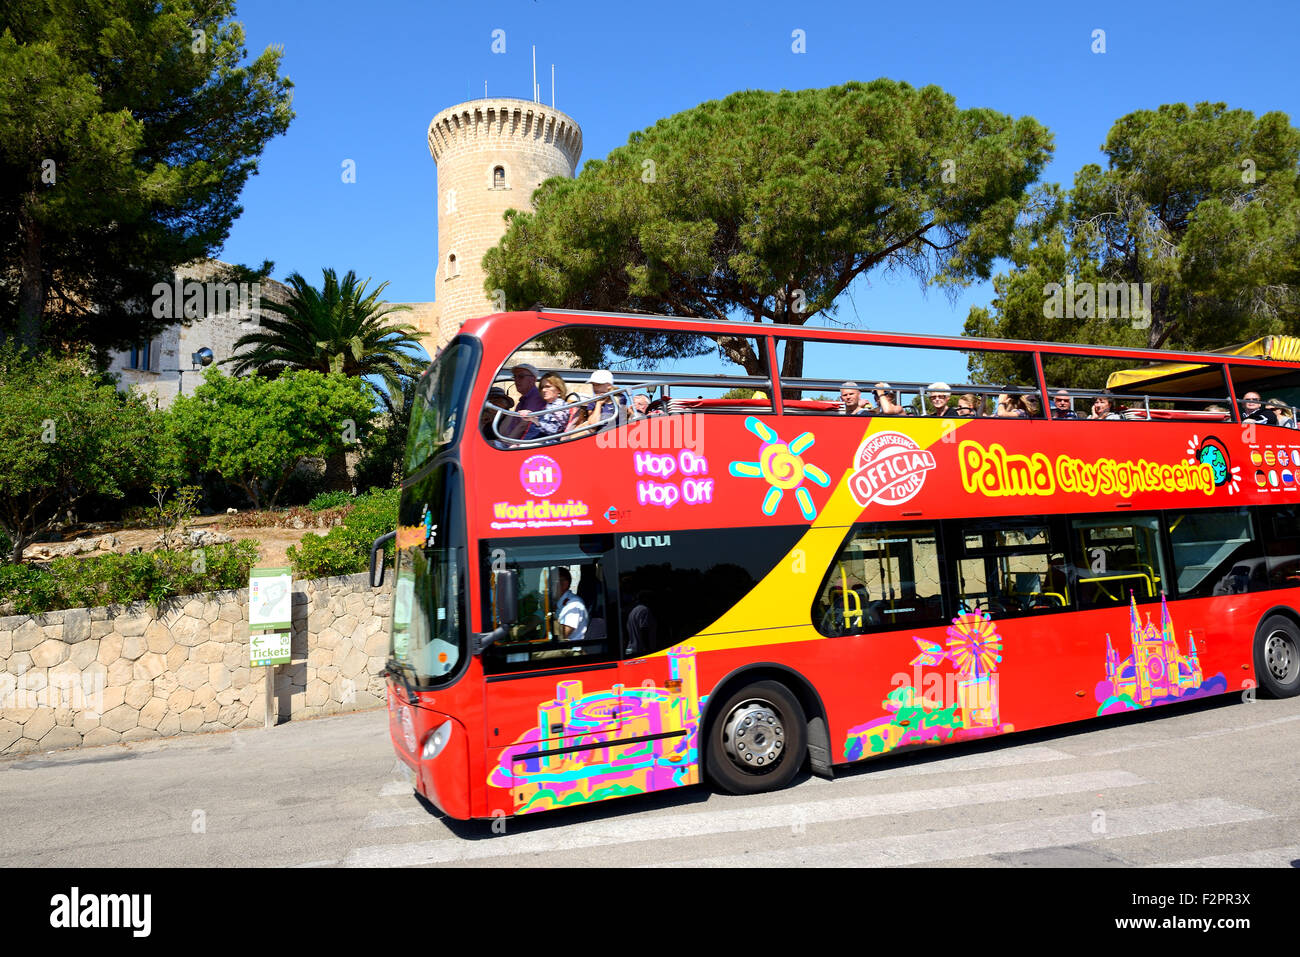 Les touristes profiter de leurs vacances sur la ville vue voyant l'autobus, Mallorca, Espagne. Banque D'Images